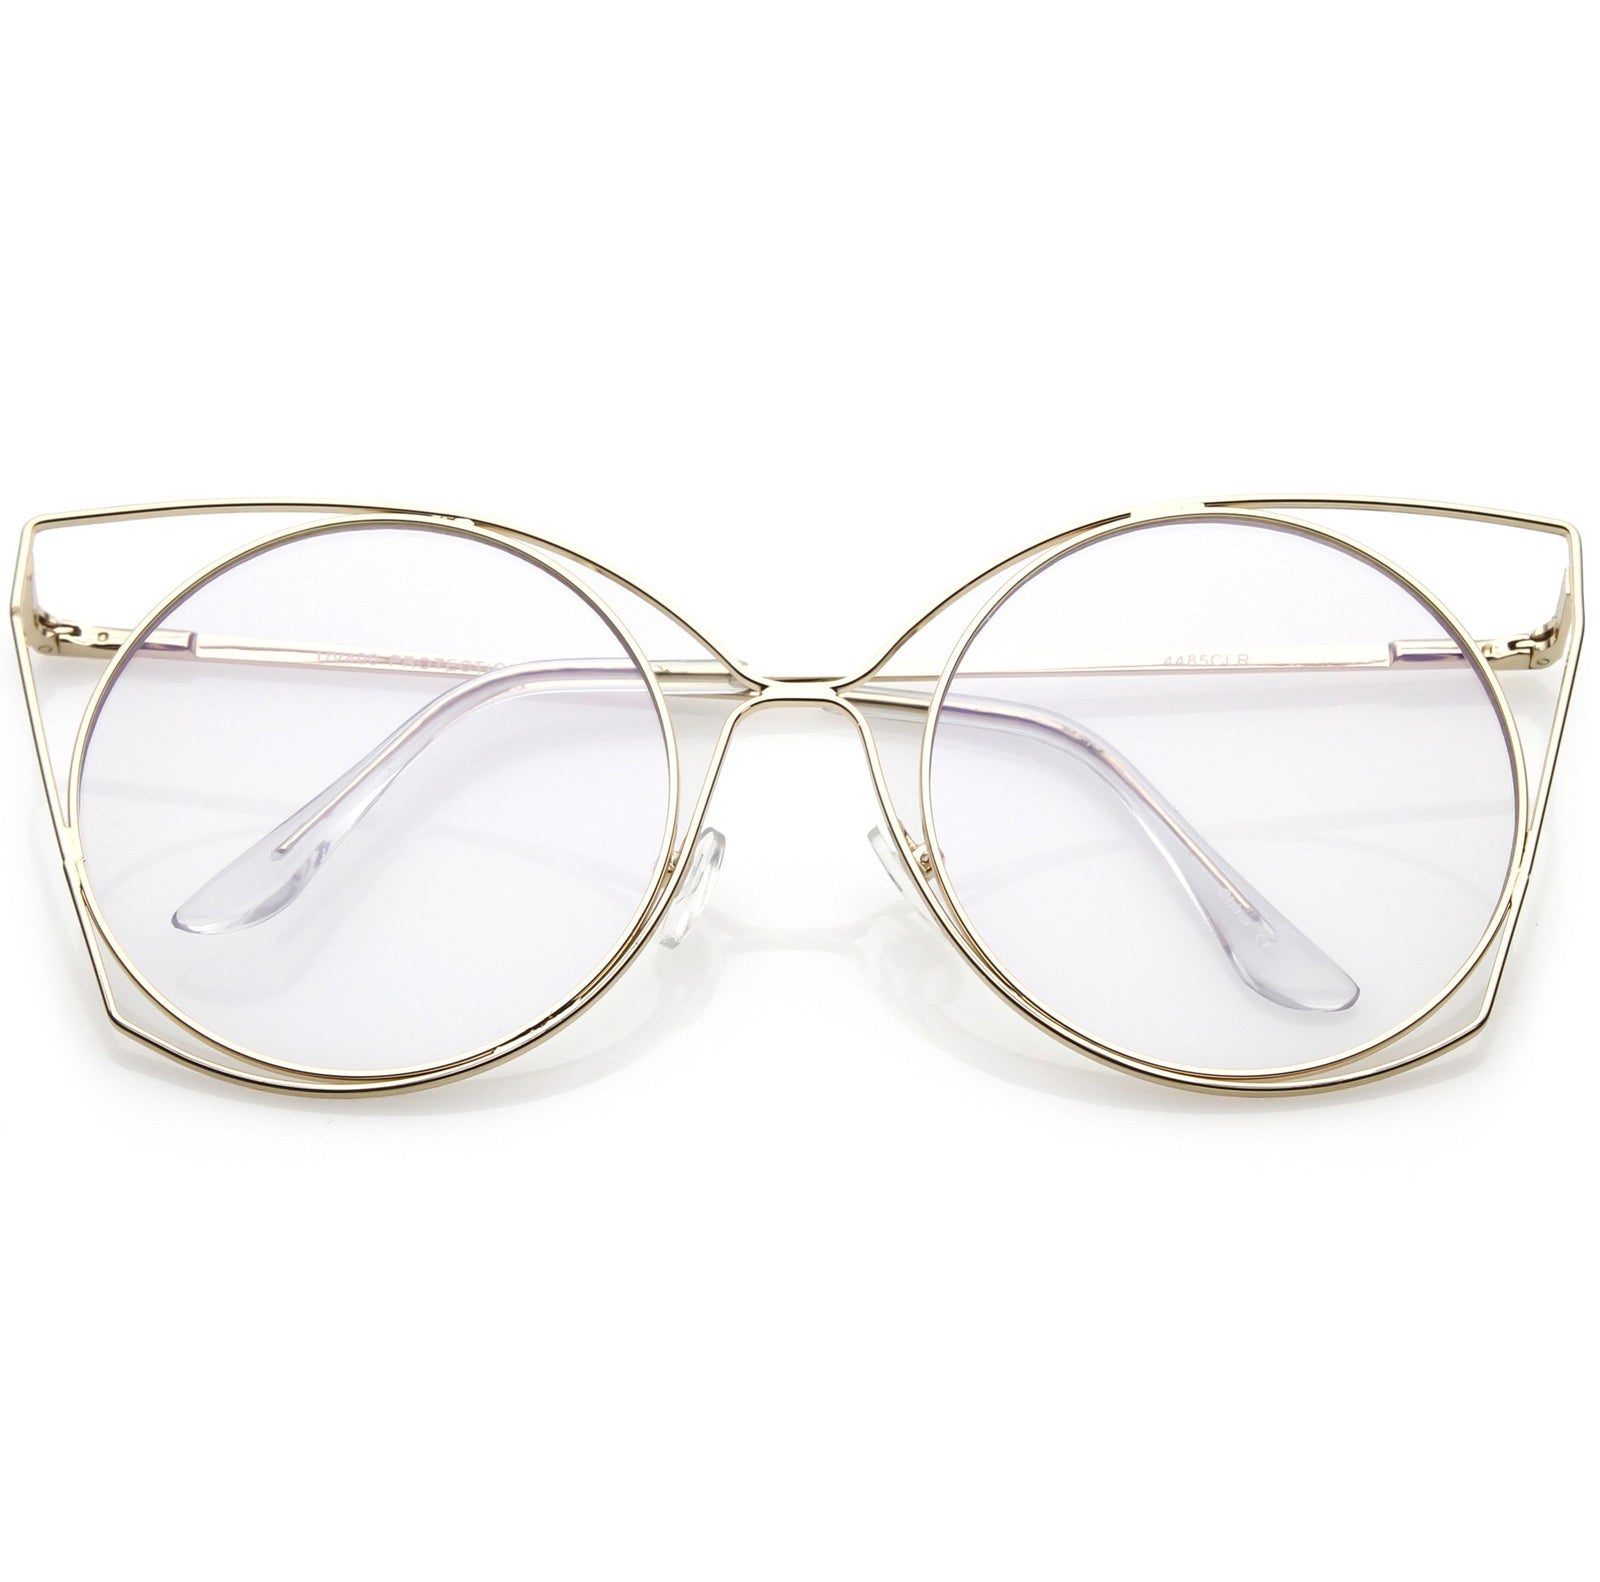 Hipster snakeskin luxury glasses flat light glasses Acetate frame